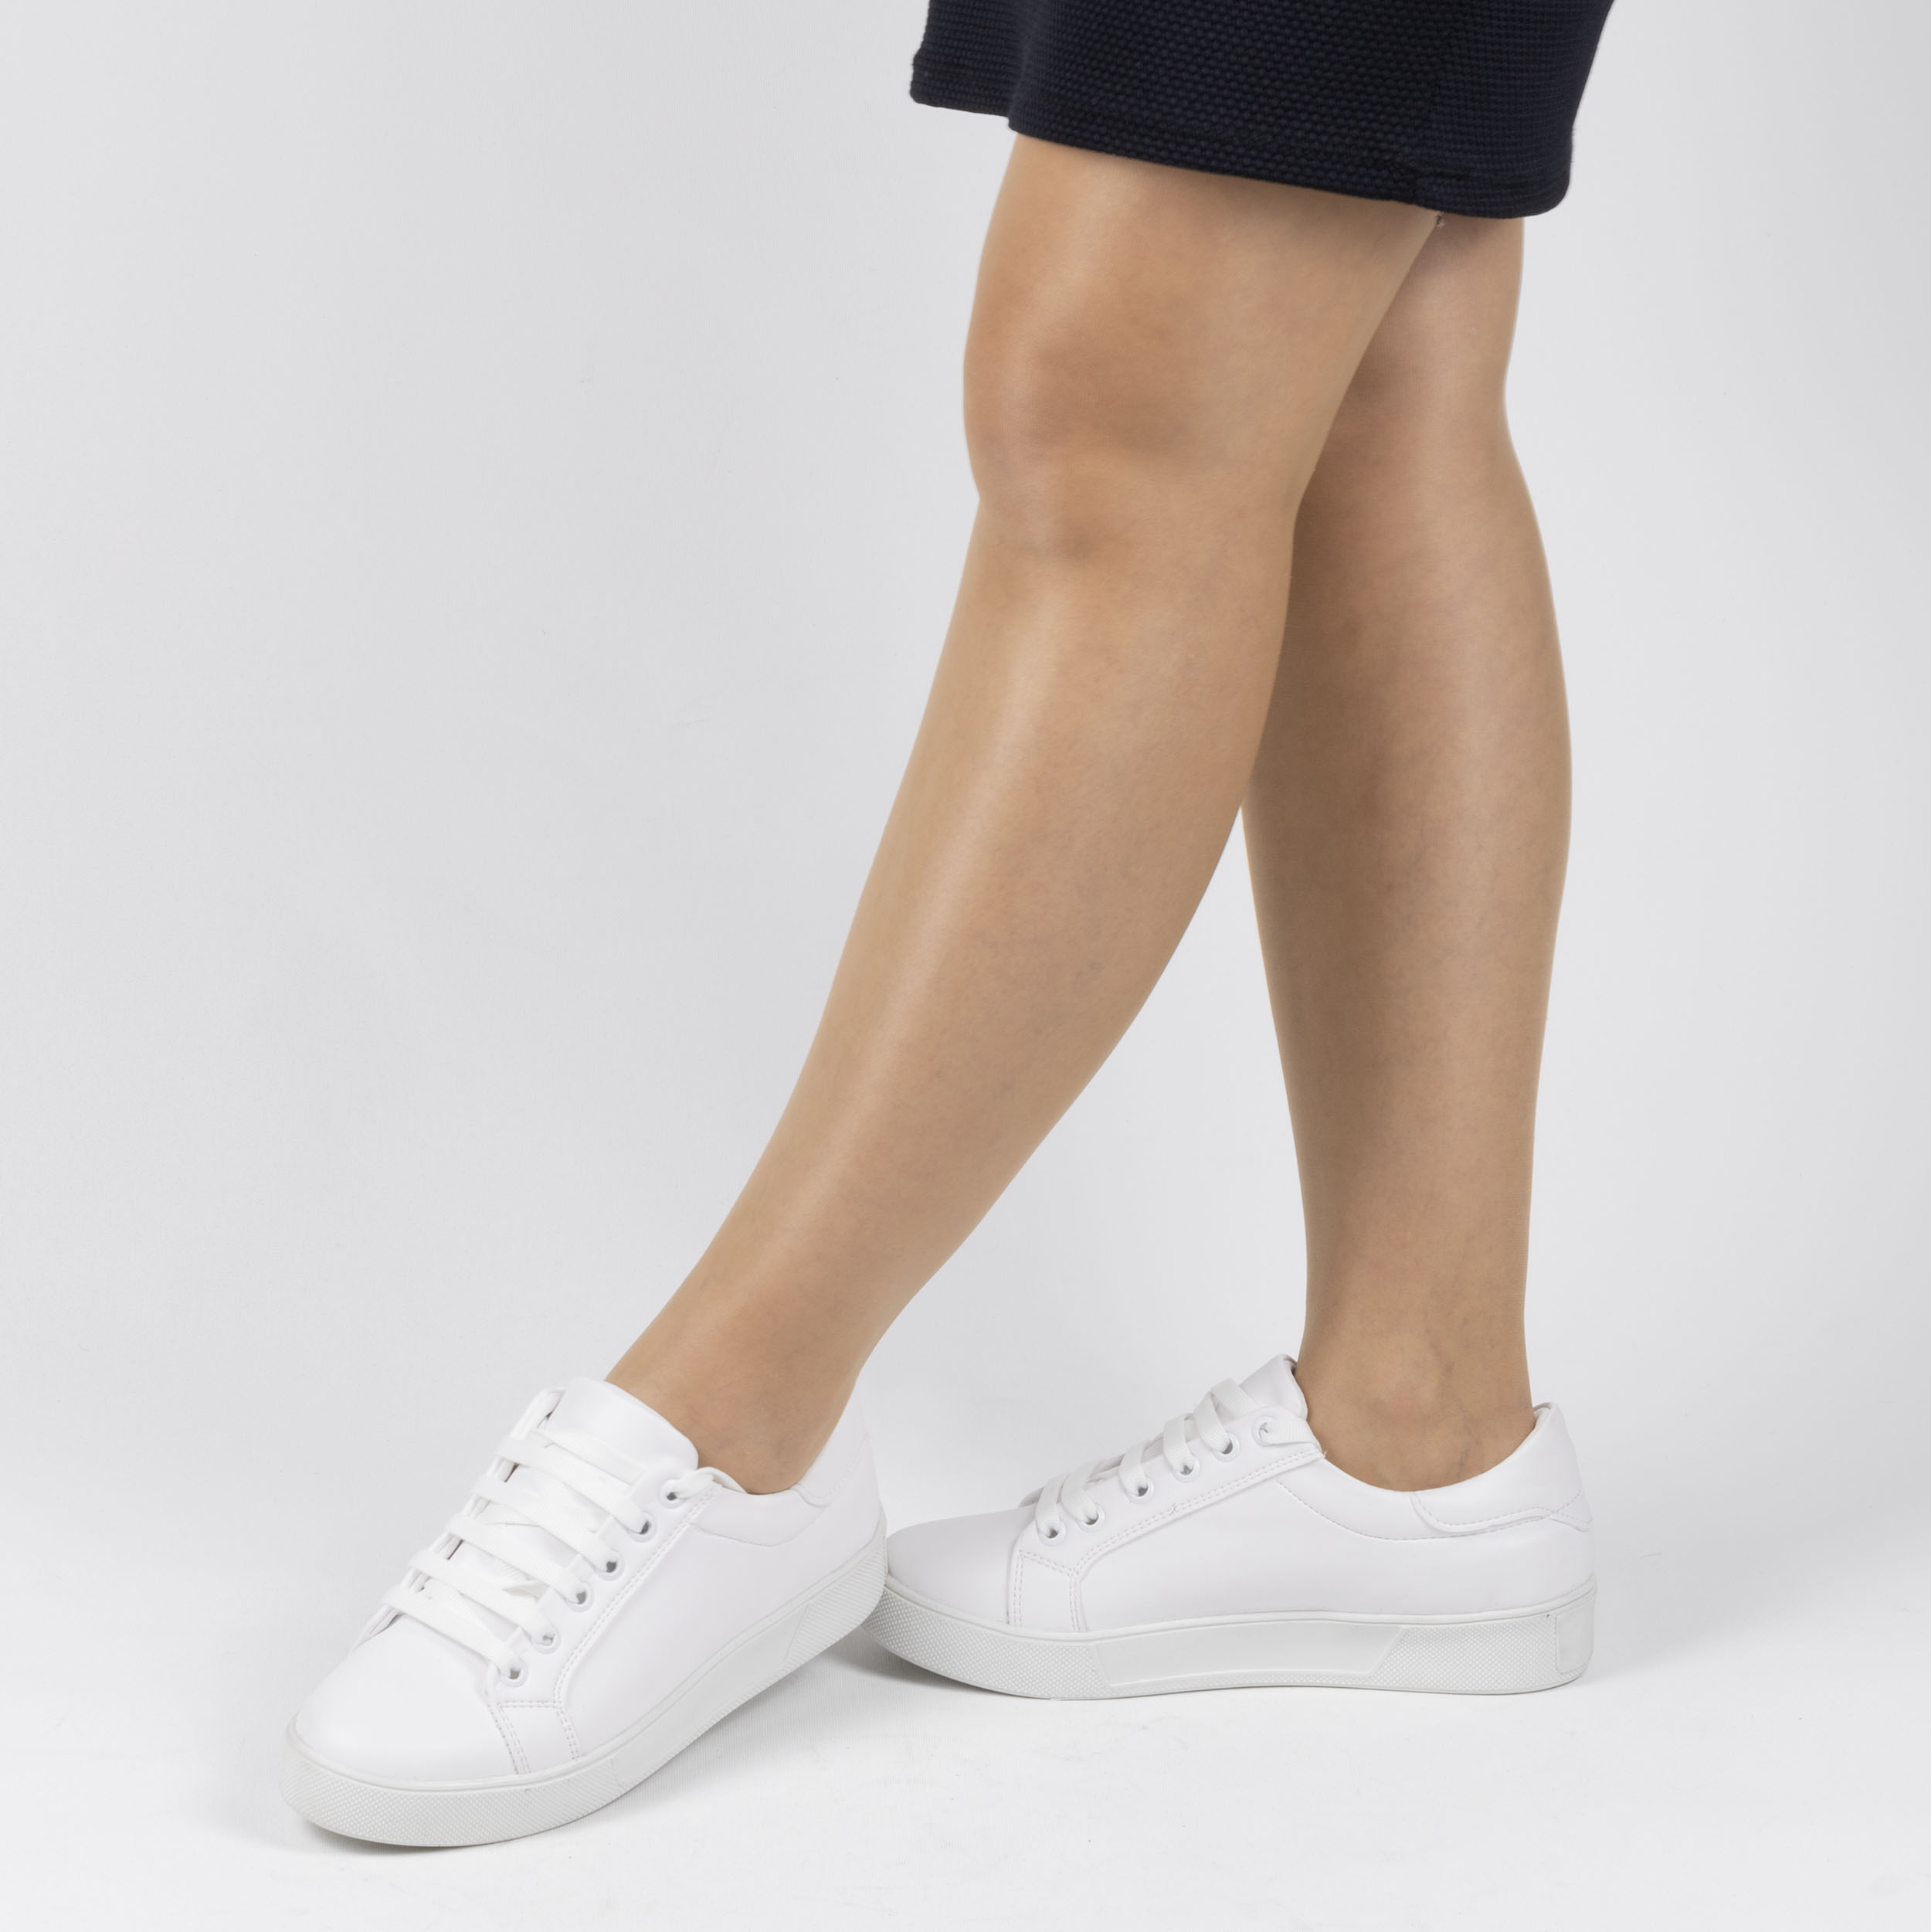 Kadın Beyaz Bağcıklı Günlük Termo Taban Spor Ayakkabı, Renk: Beyaz, Beden: 36